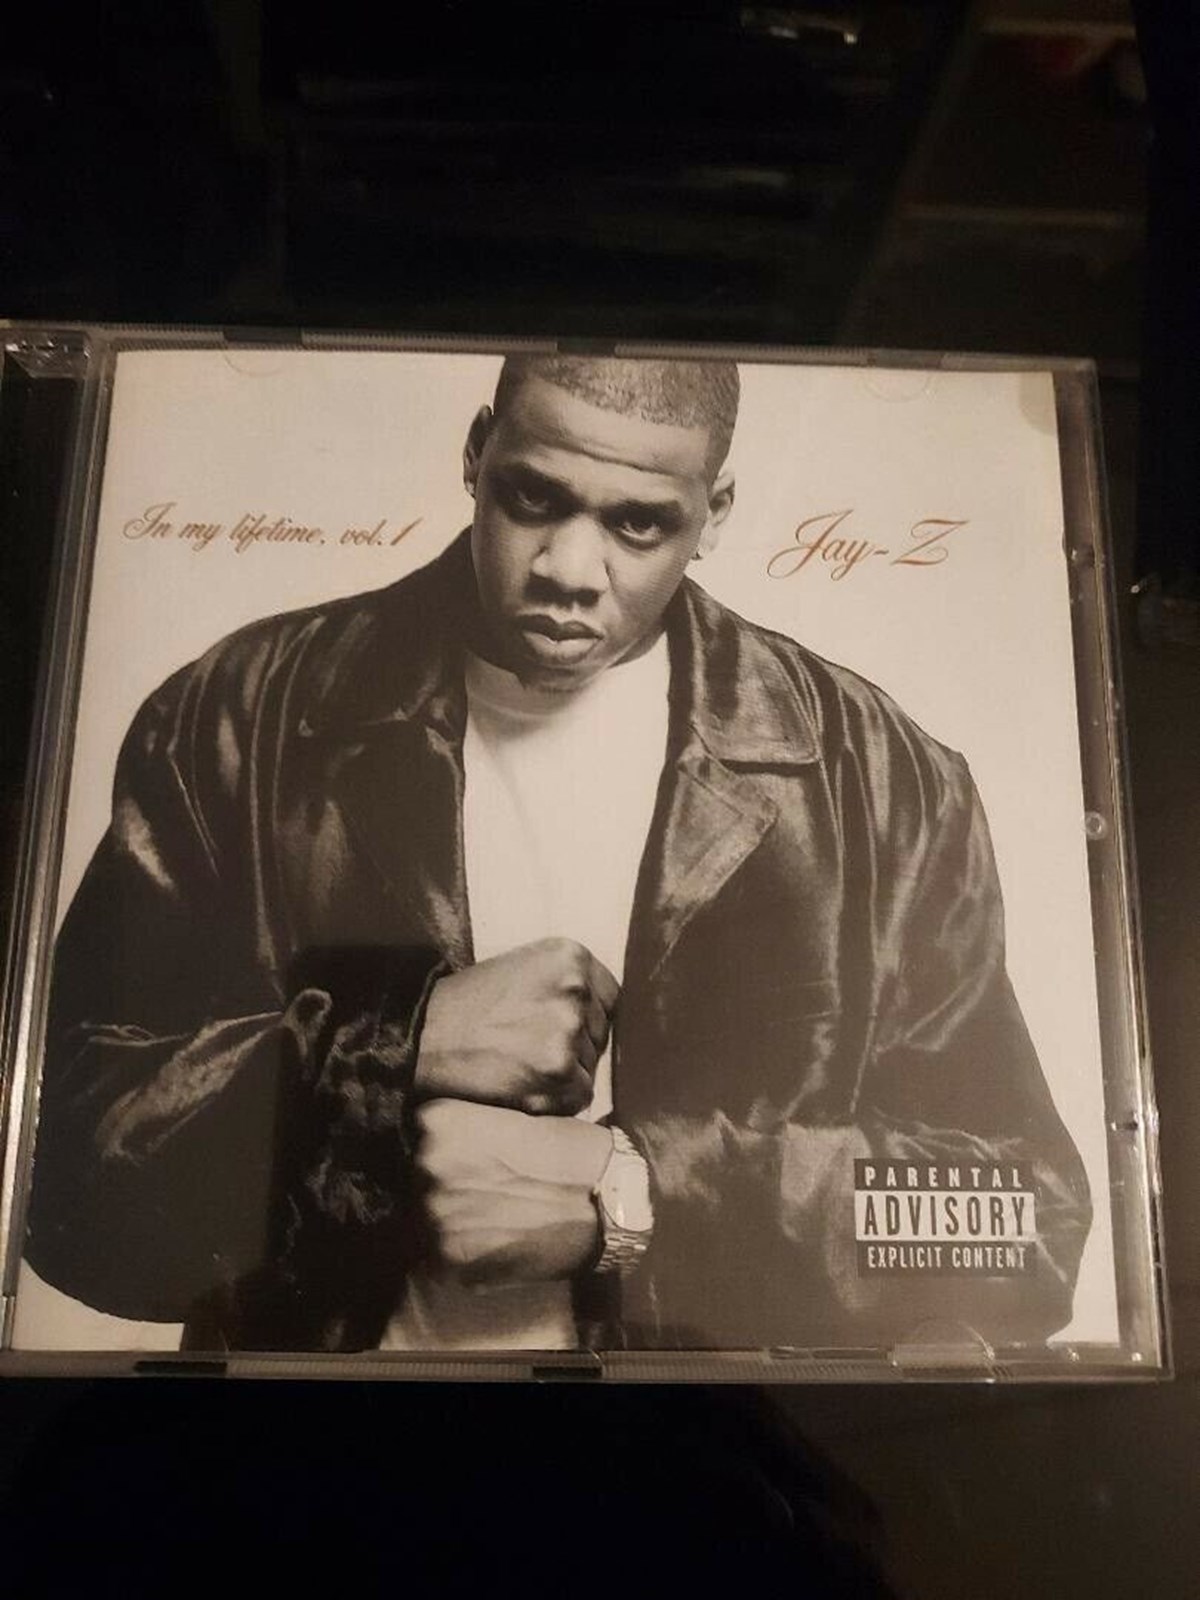 Jay Z var en af tidens store ikoner, og hans musik lever endnu. Du kan købe dette album af Torben i København for 60 kroner.